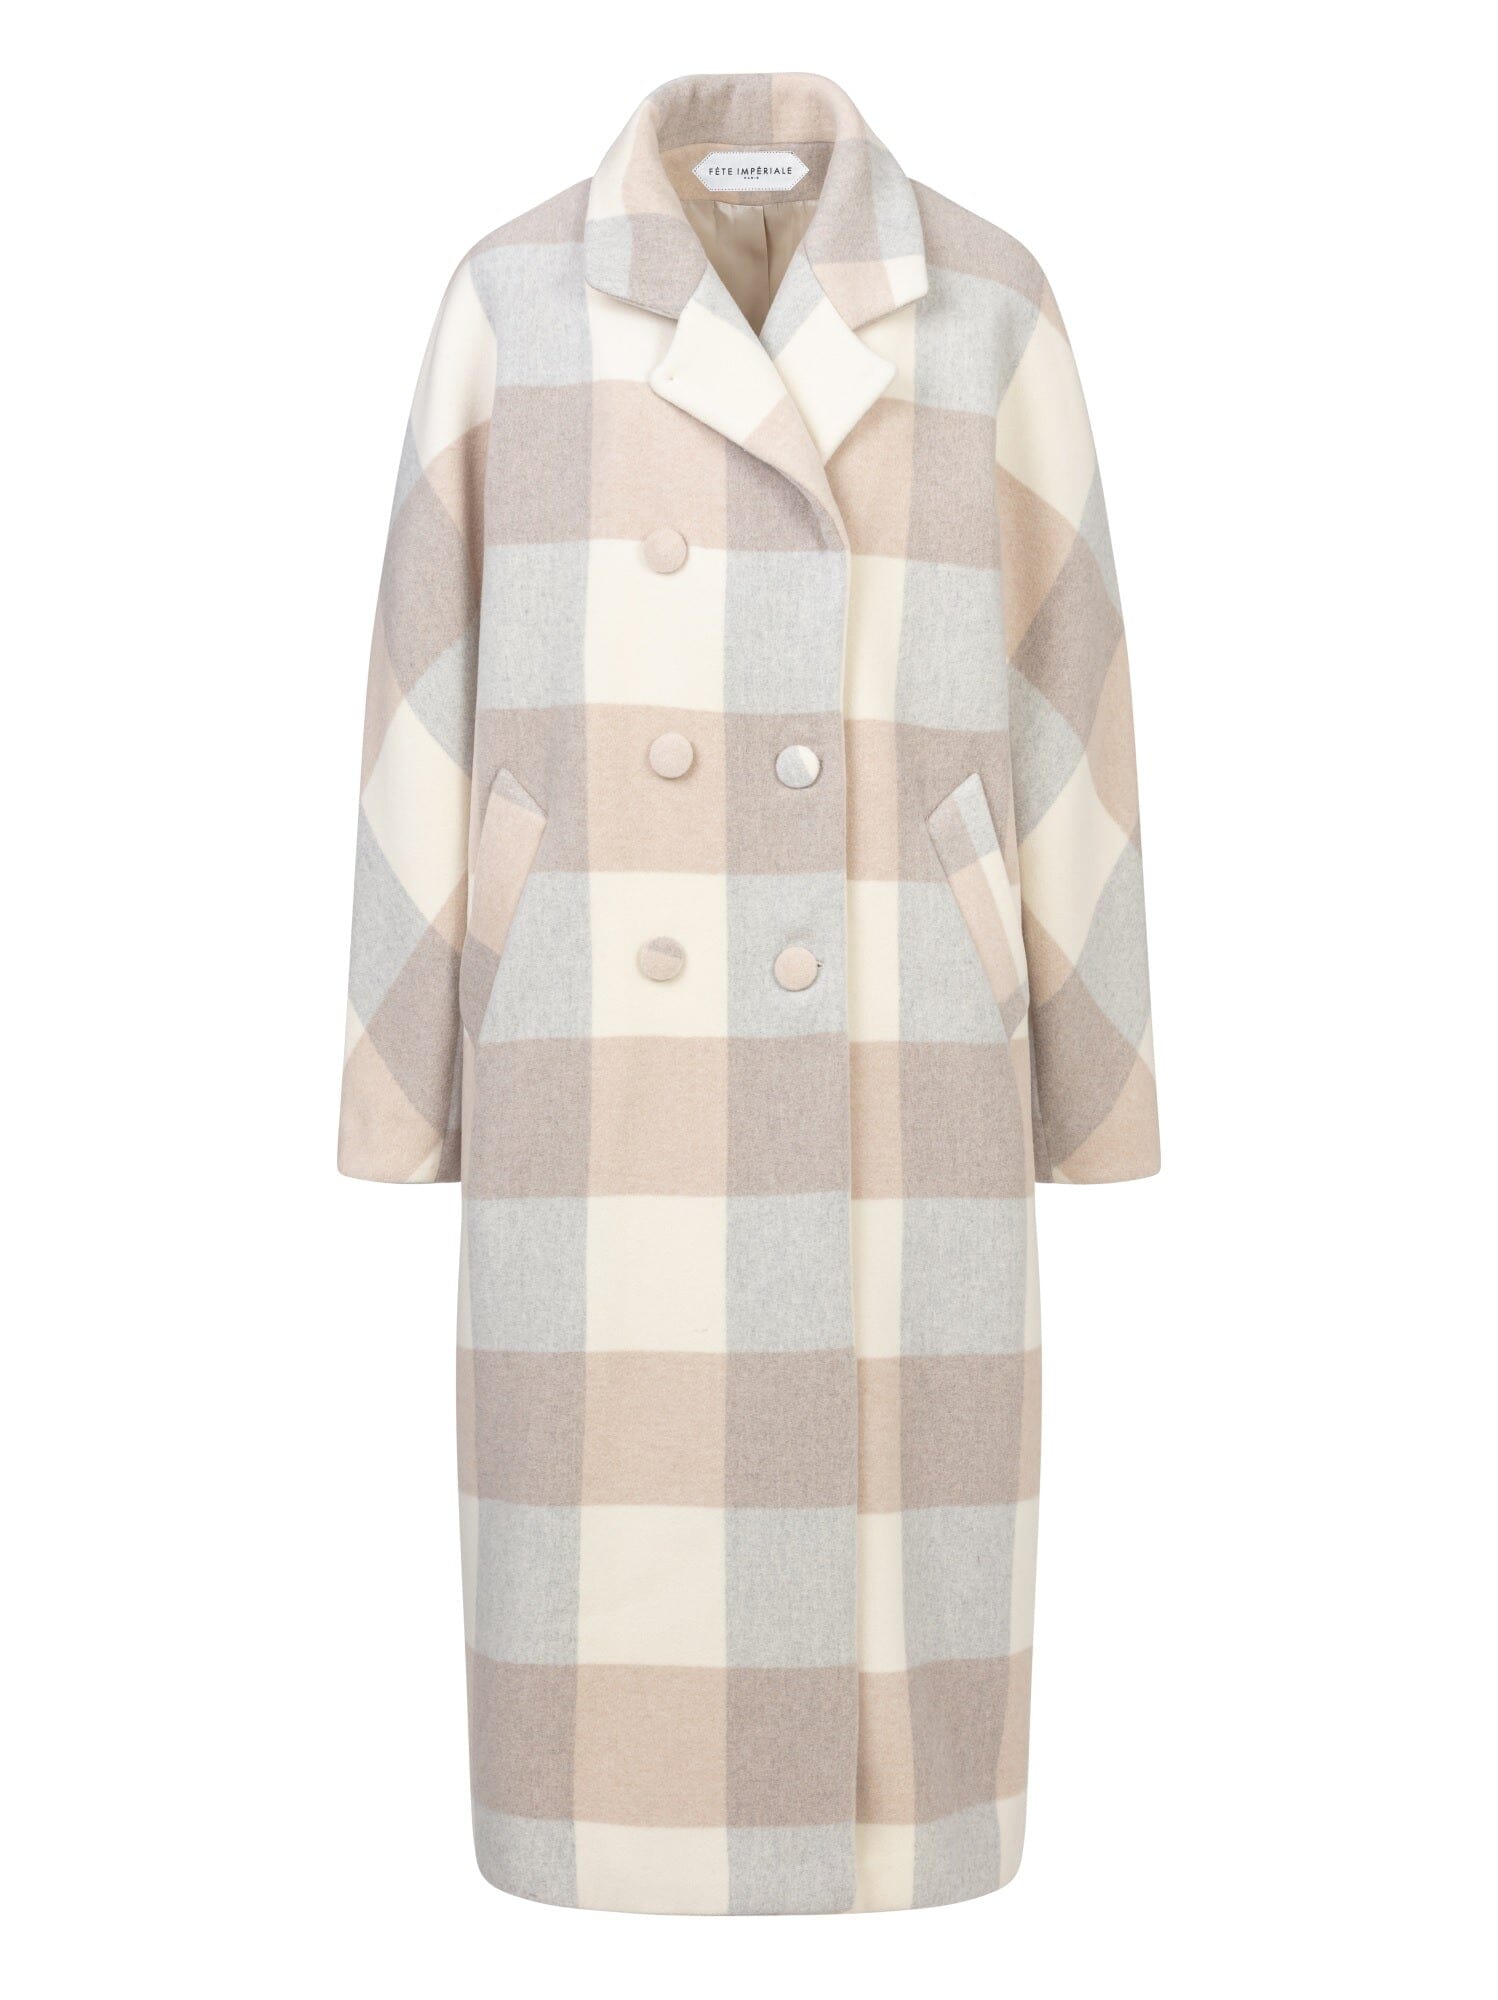 EBONY - Long Oversized Sheath Collar Coat in Checked Virgin Wool Coat Fête Impériale